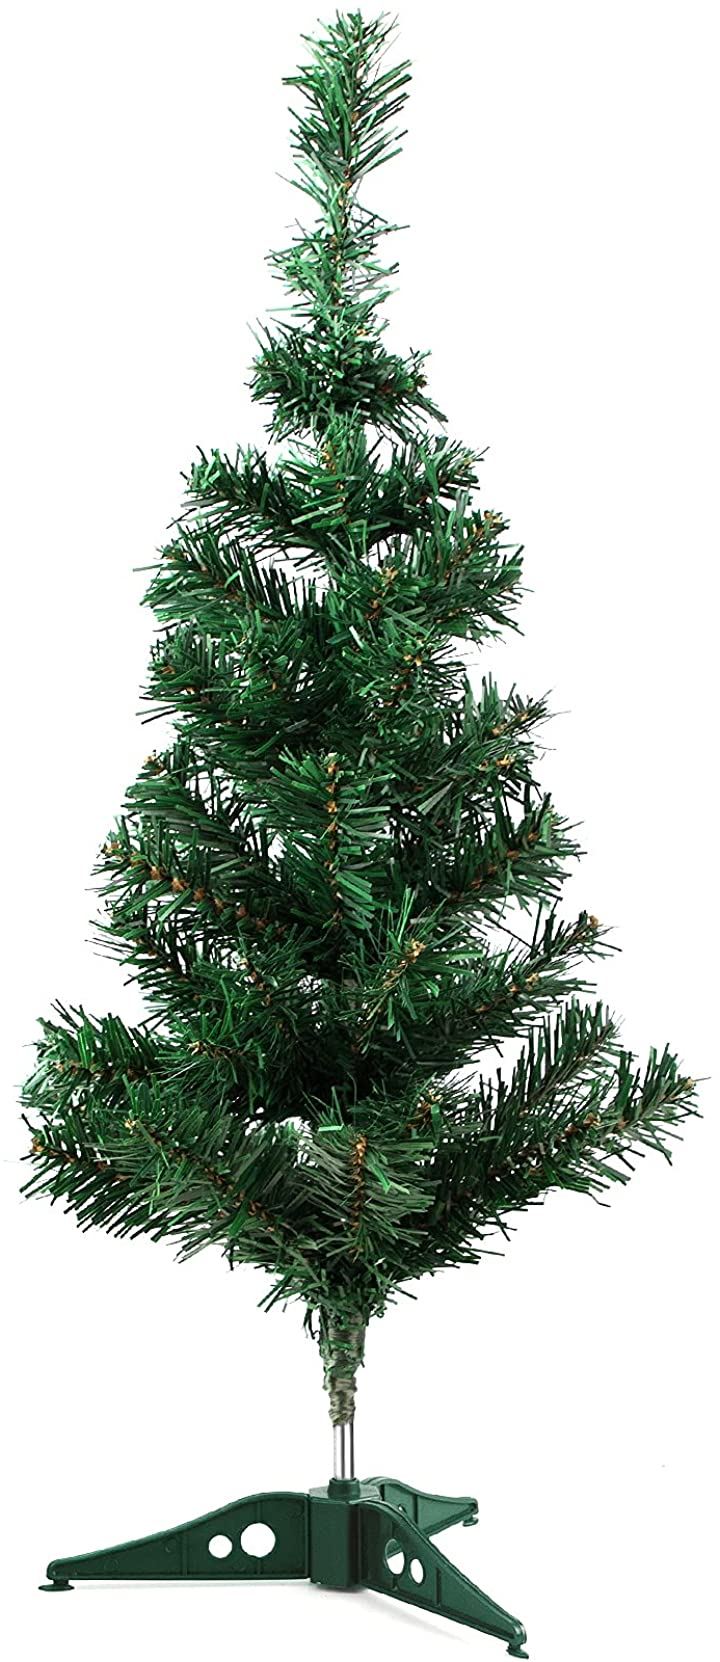 クリスマスツリー卓上60CM ミニクリスマスツリー オーナメントなし ミニツリー christmas tree クリスマス用品 パーティー・イベント用品・販促品 おもちゃ・ホビー・ゲーム(60CM)